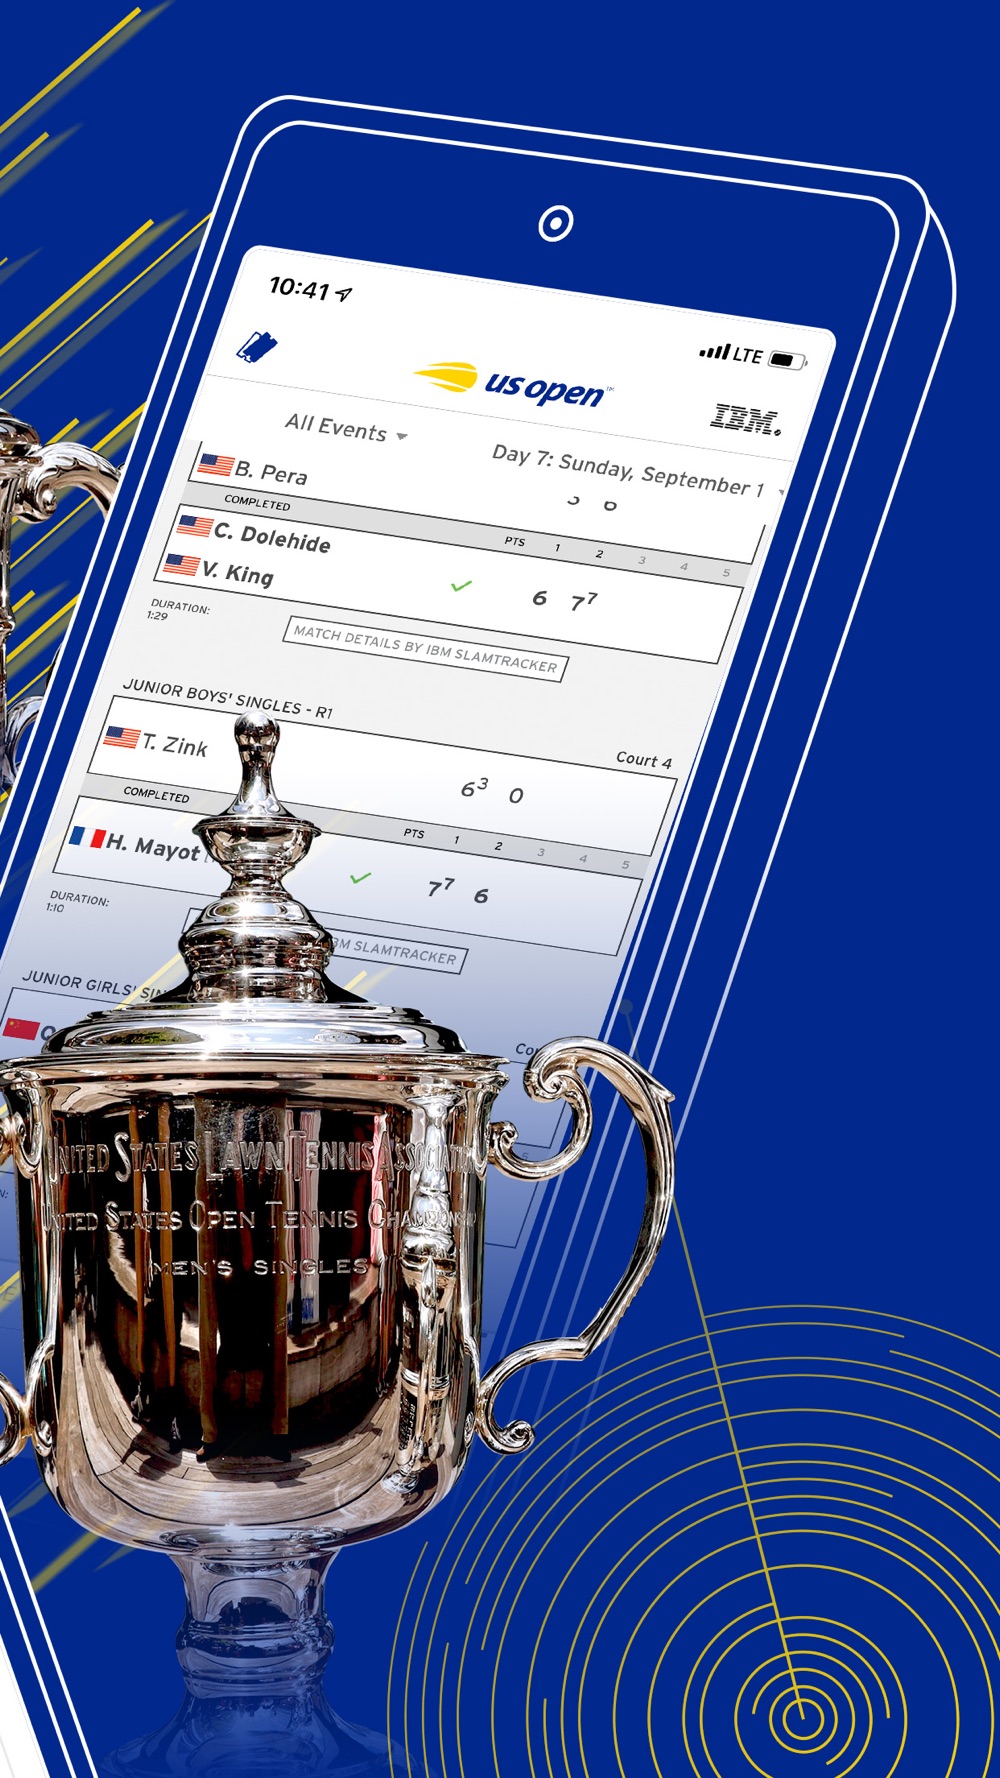 Verplaatsbaar Beoefend Flitsend US Open Tennis Championships Free Download App for iPhone - STEPrimo.com